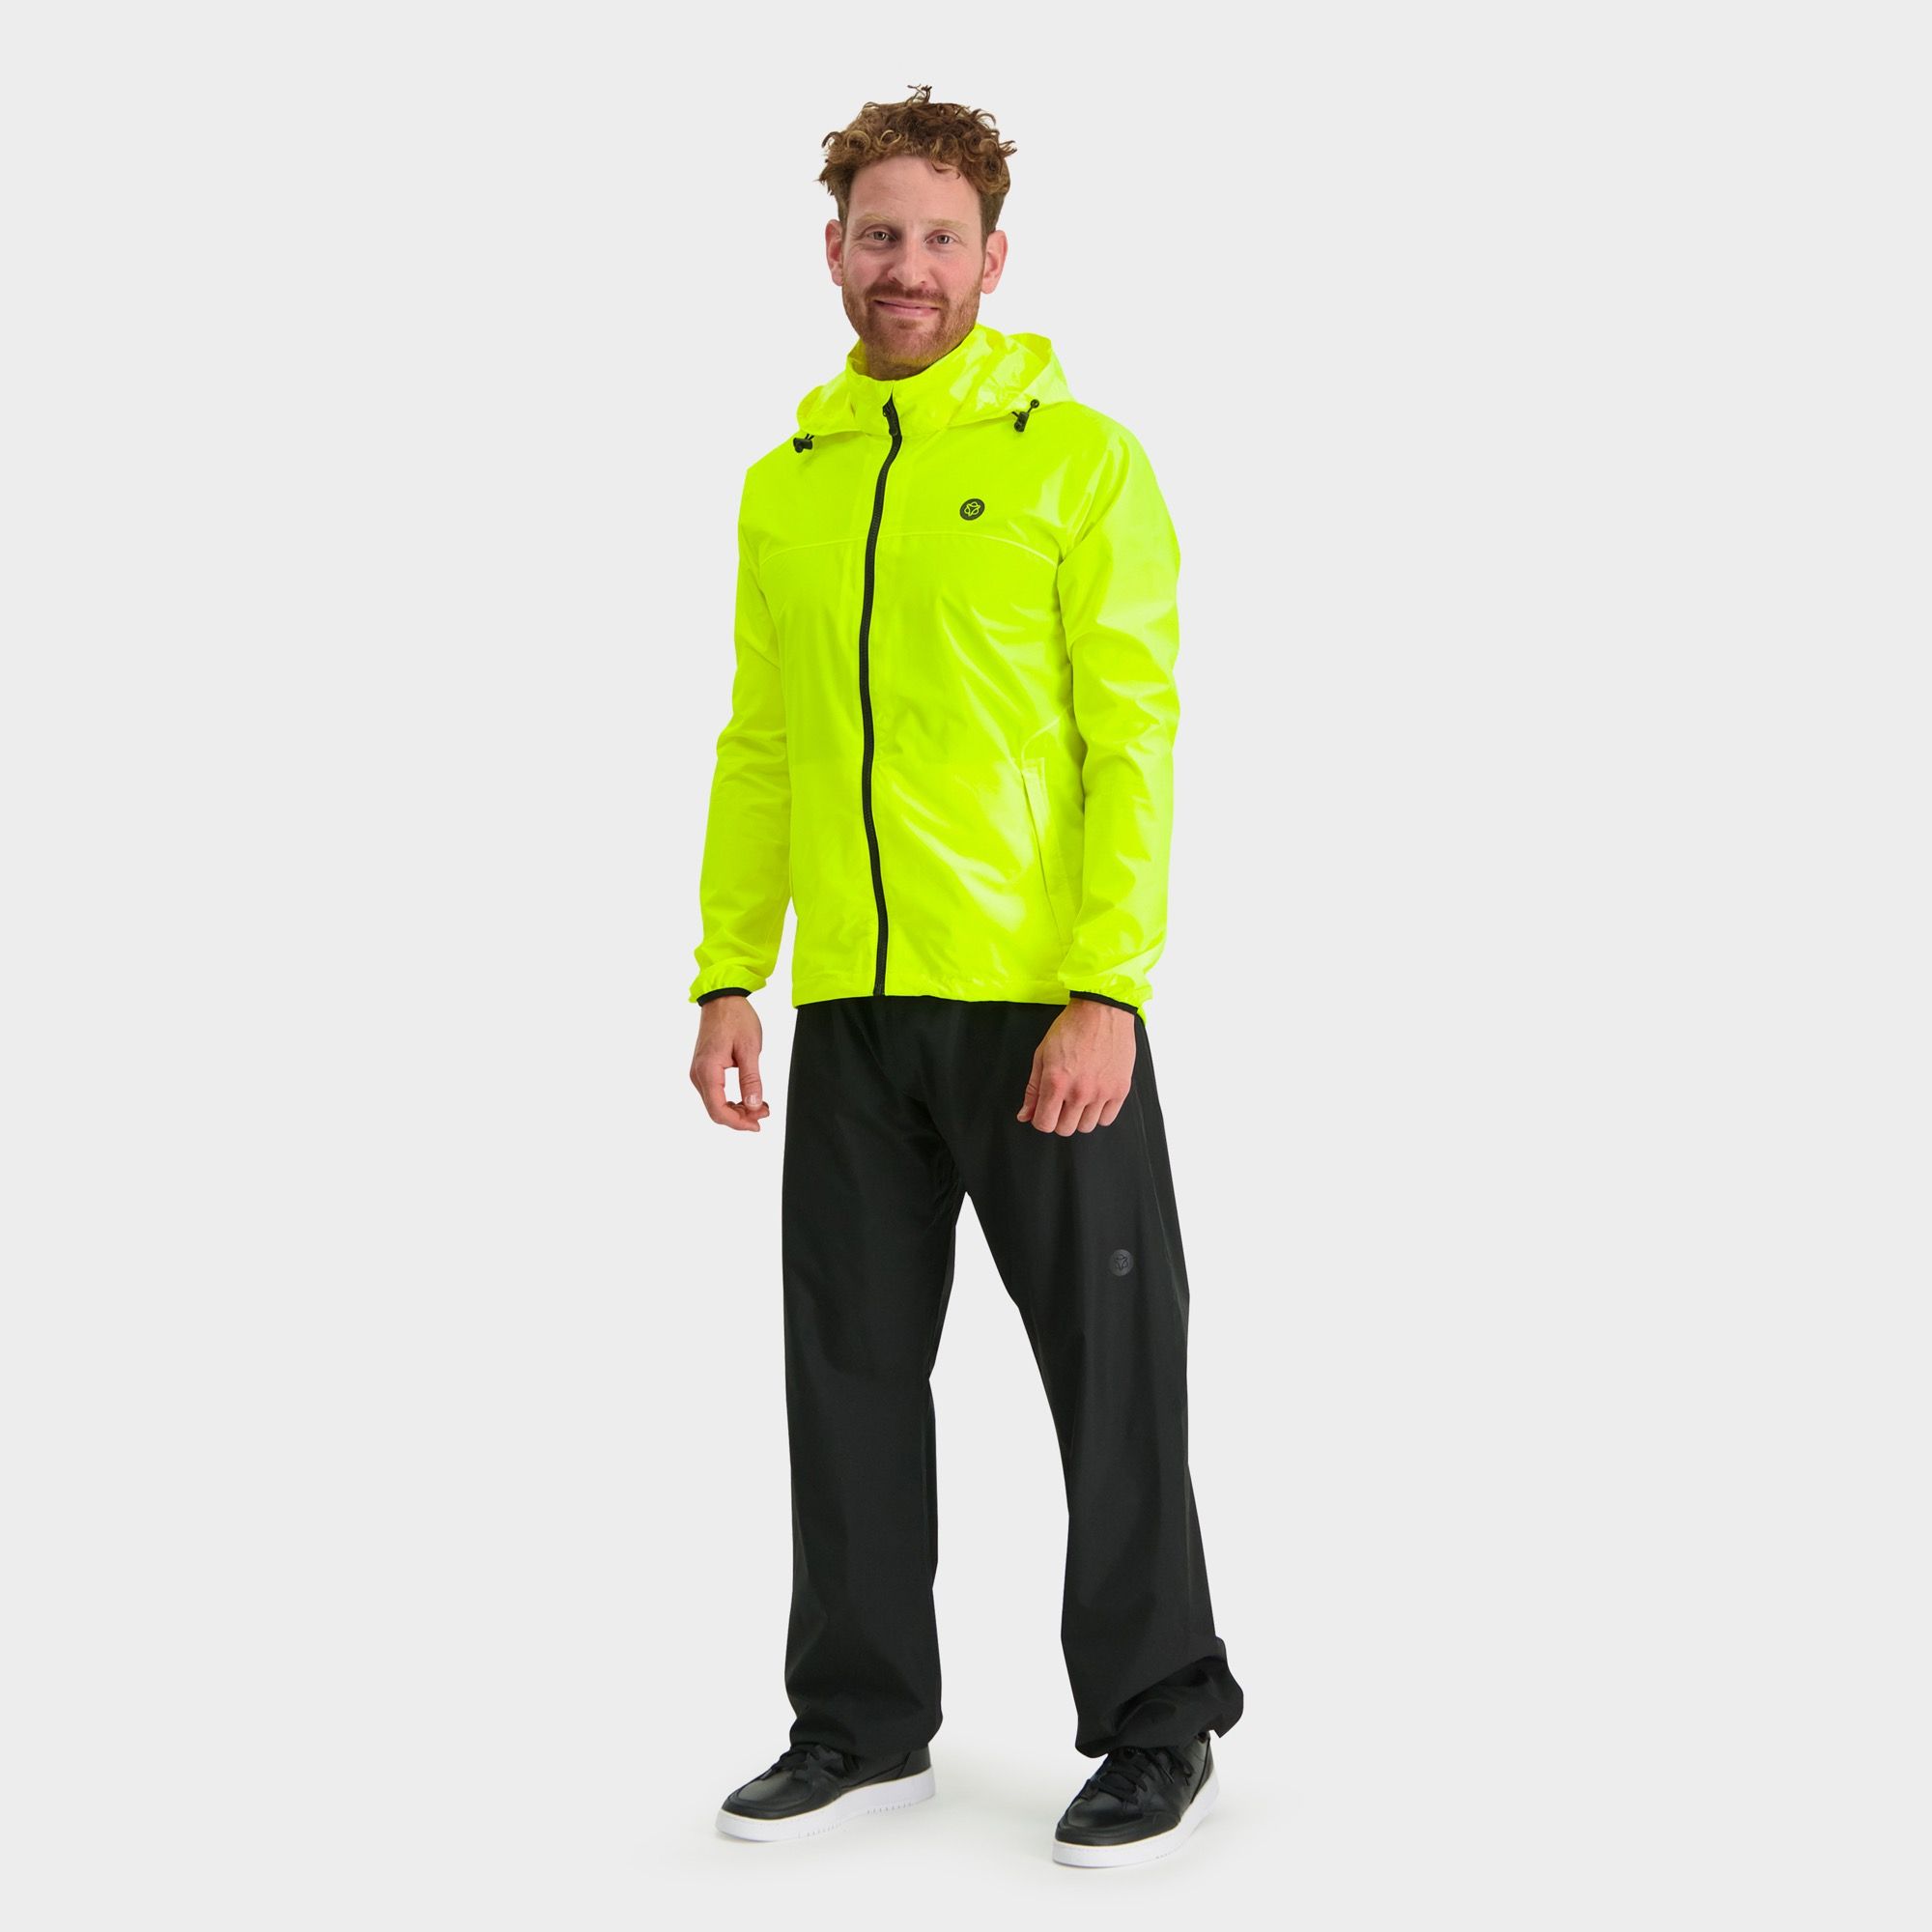 GO Rain Suit Essential fit example